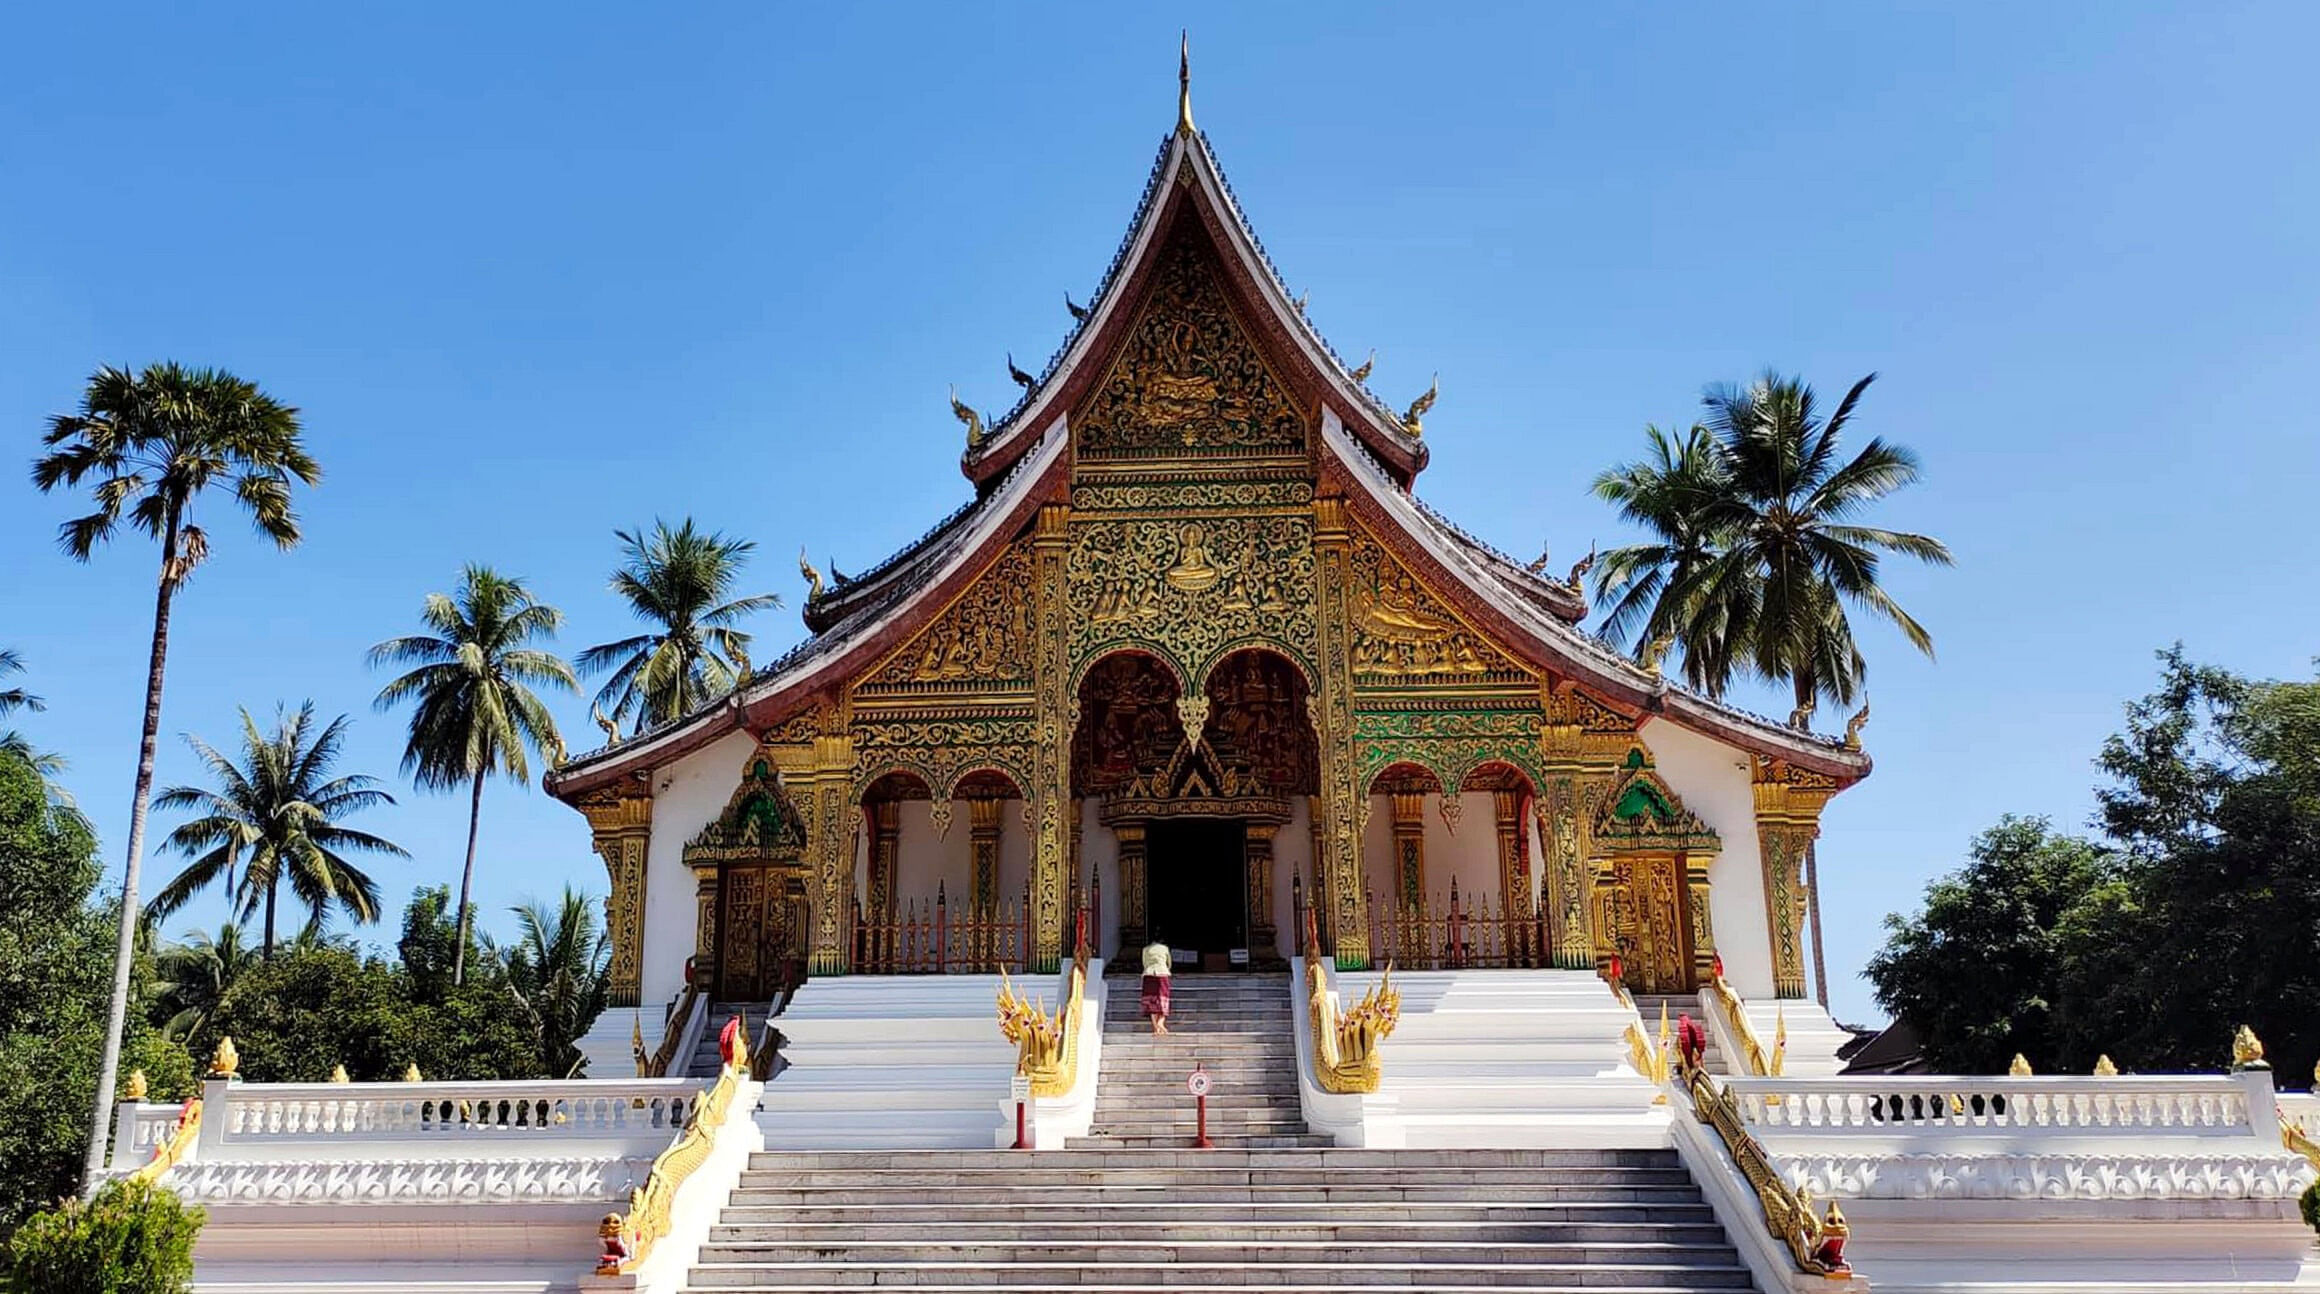 Temple in Luang Prabang, Laos